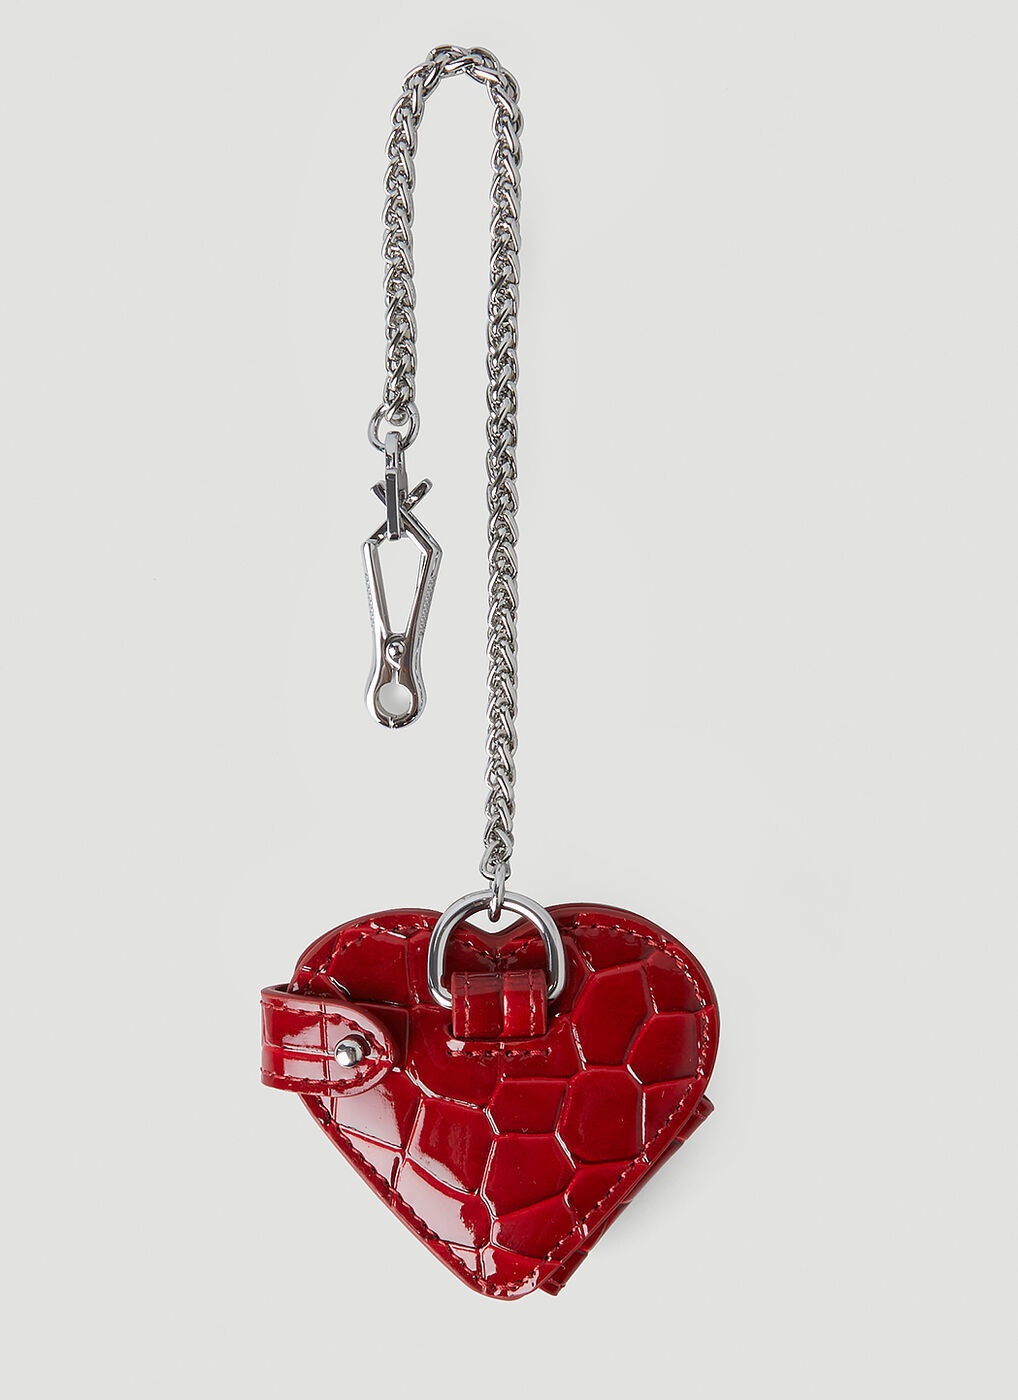 Vivienne Westwood 'Johanna' heart-shaped shoulder bag